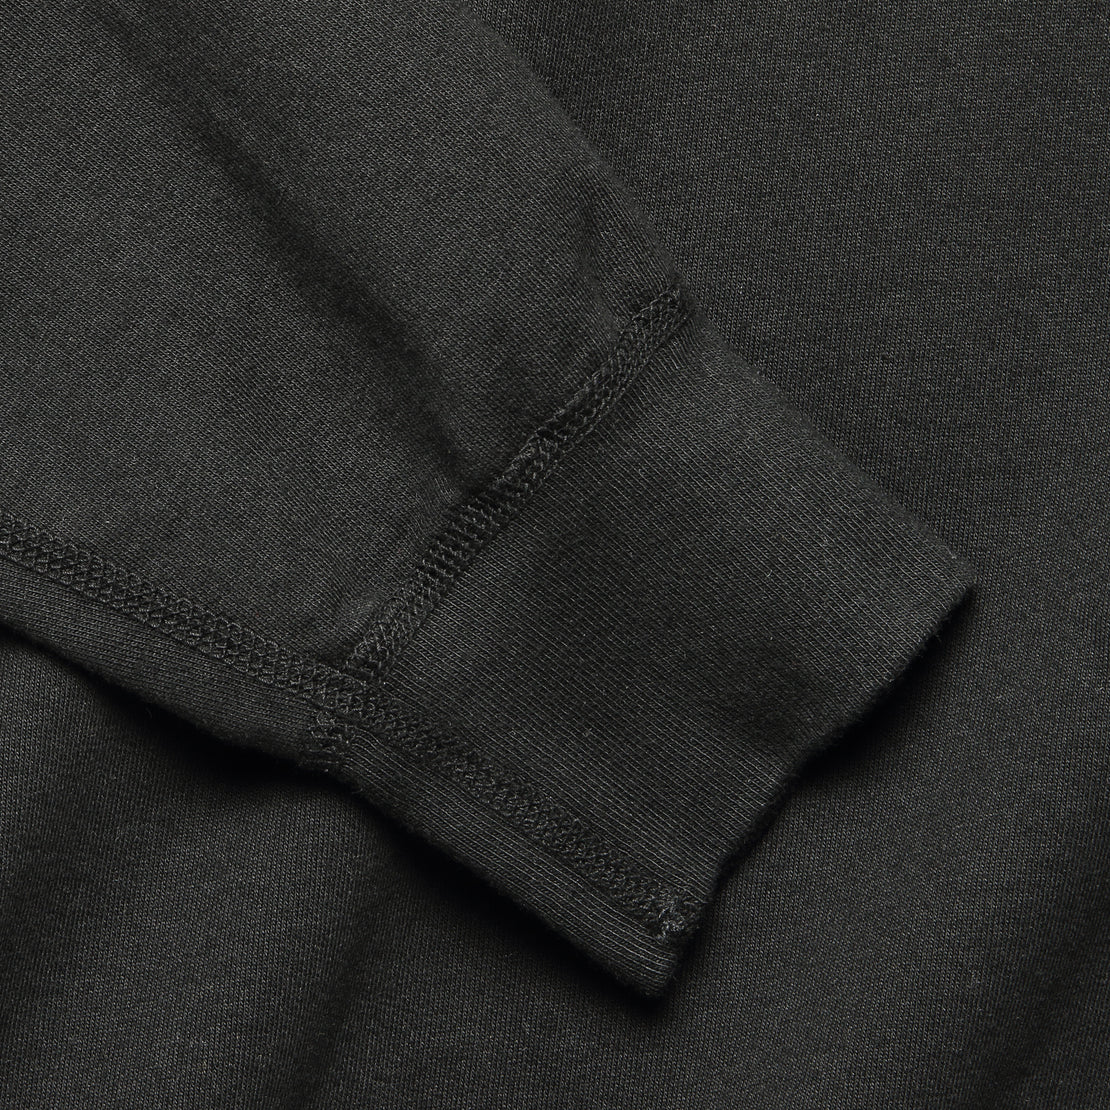 Supima Fleece Sweatshirt - Black - Save Khaki - STAG Provisions - Tops - Fleece / Sweatshirt